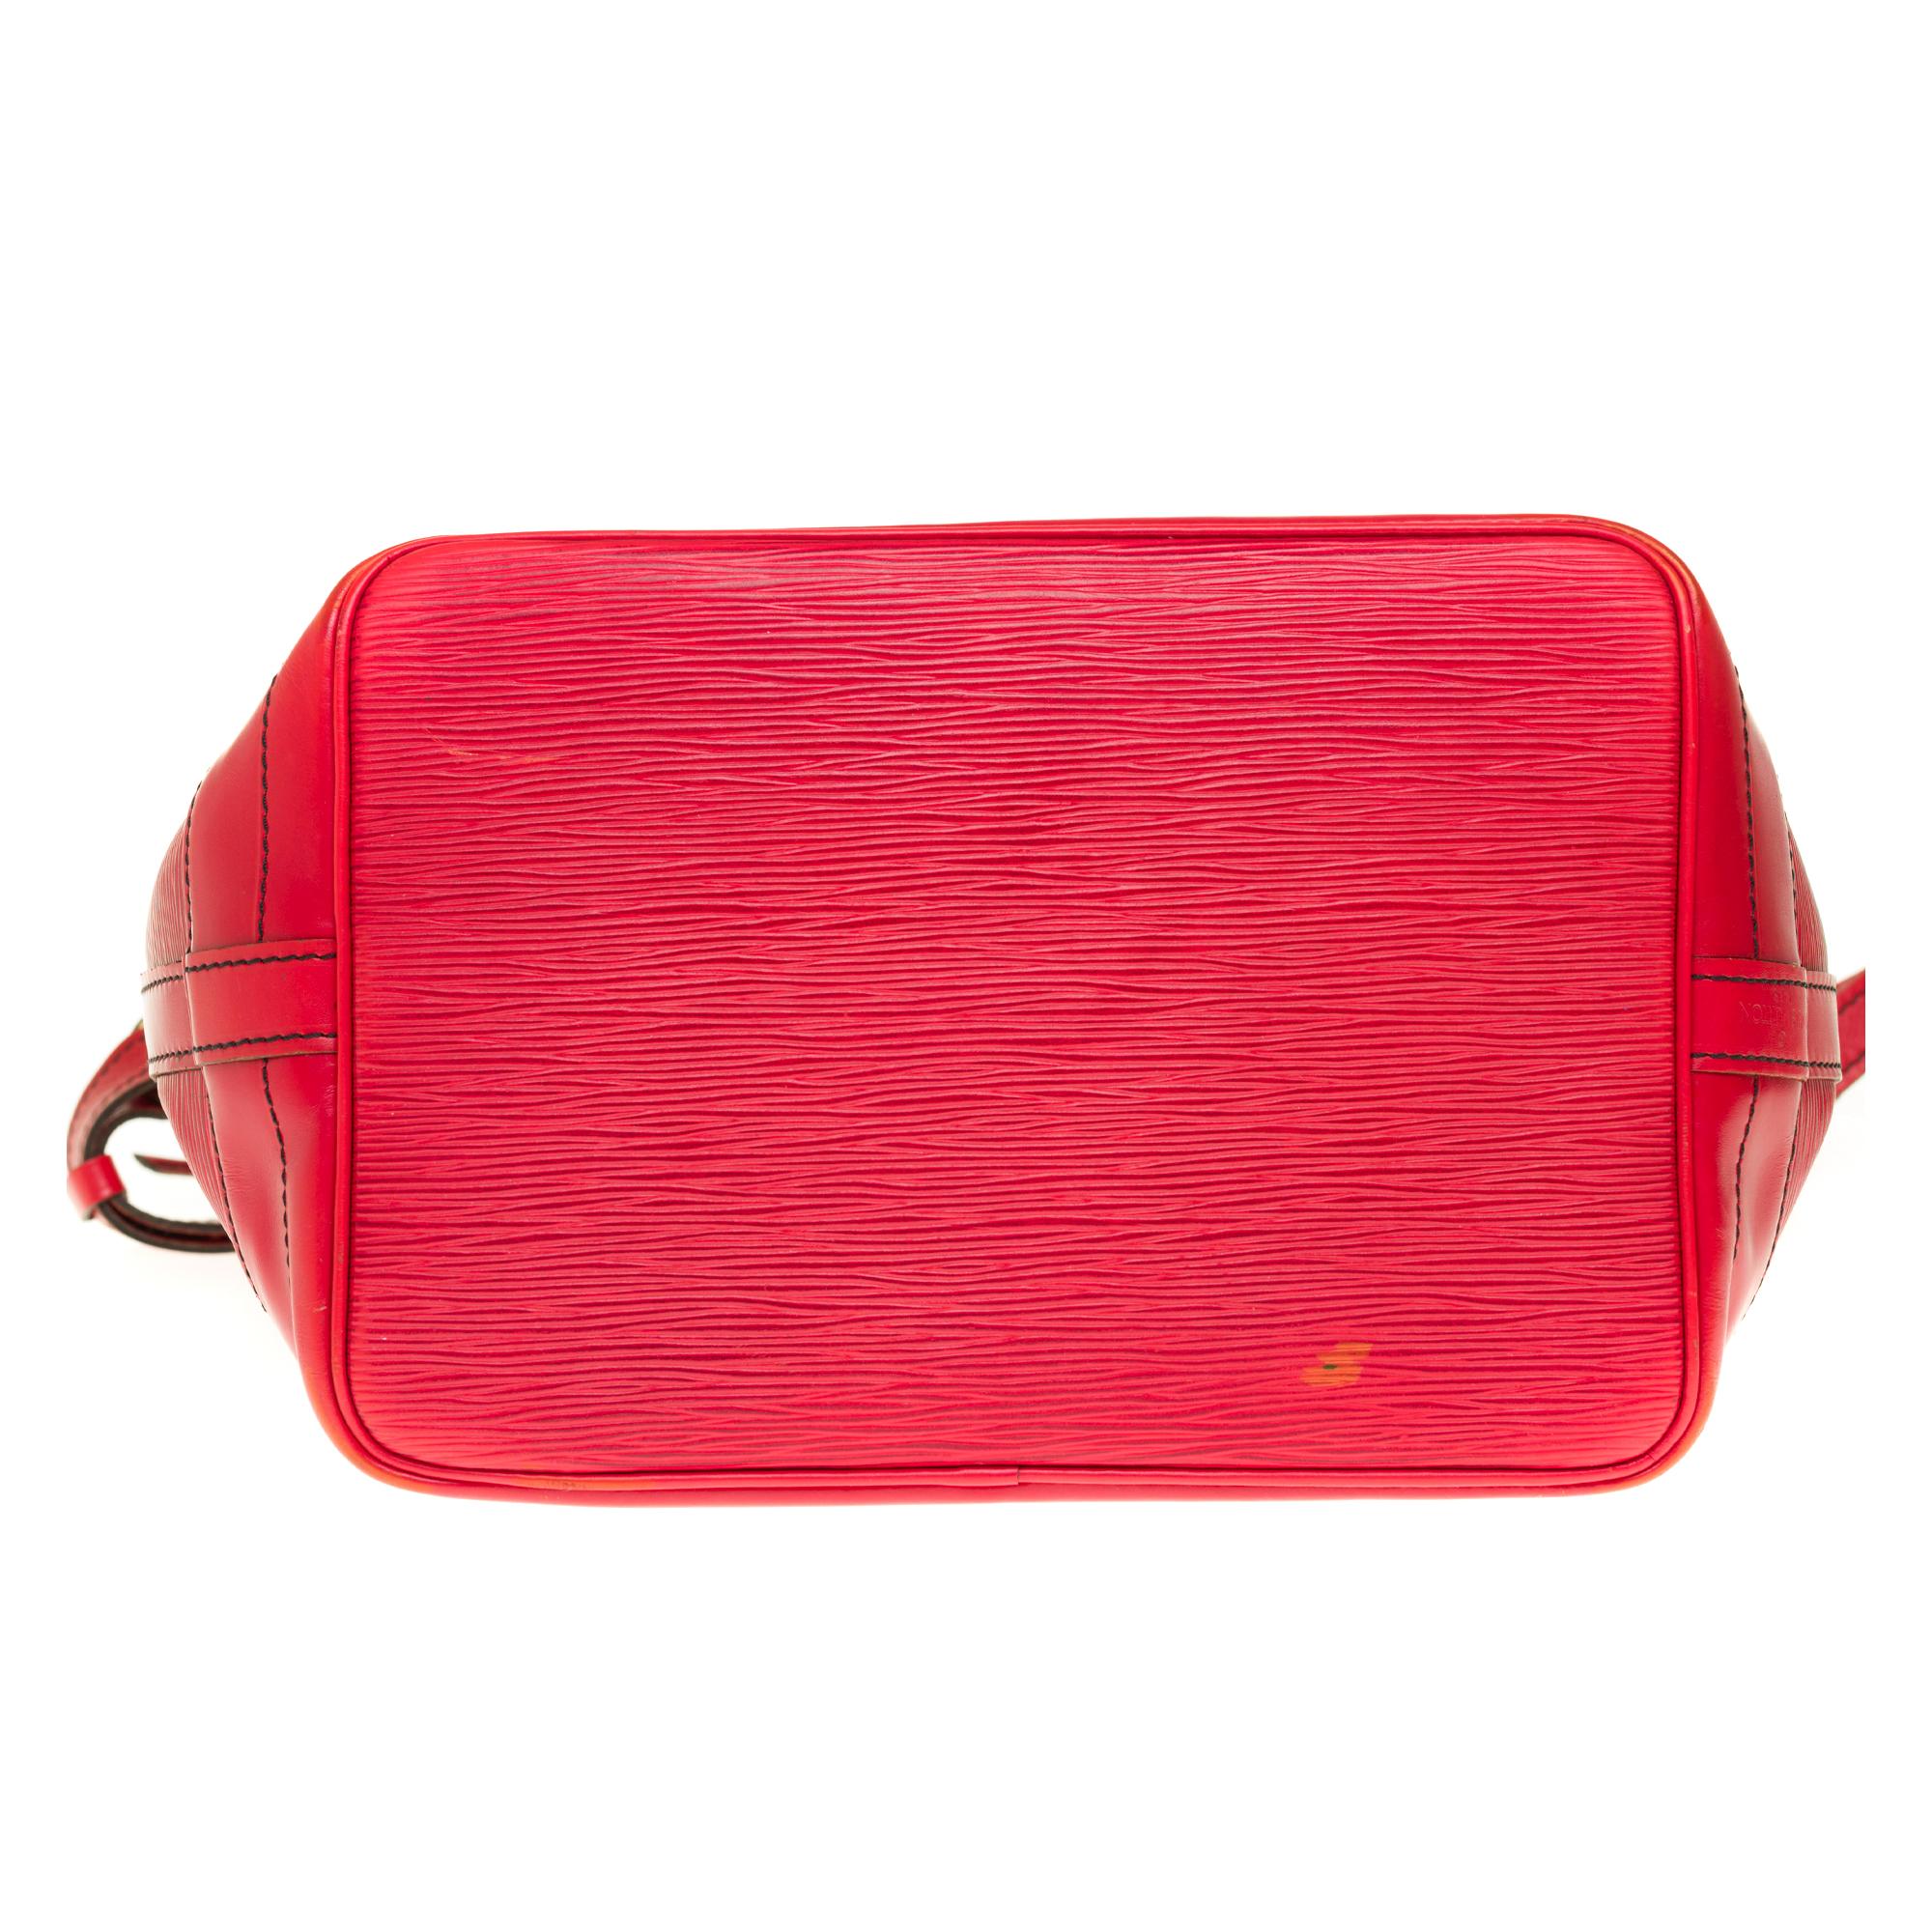 Louis Vuitton Noé Grand modele shoulder bag in red epi leather, gold hardware 4